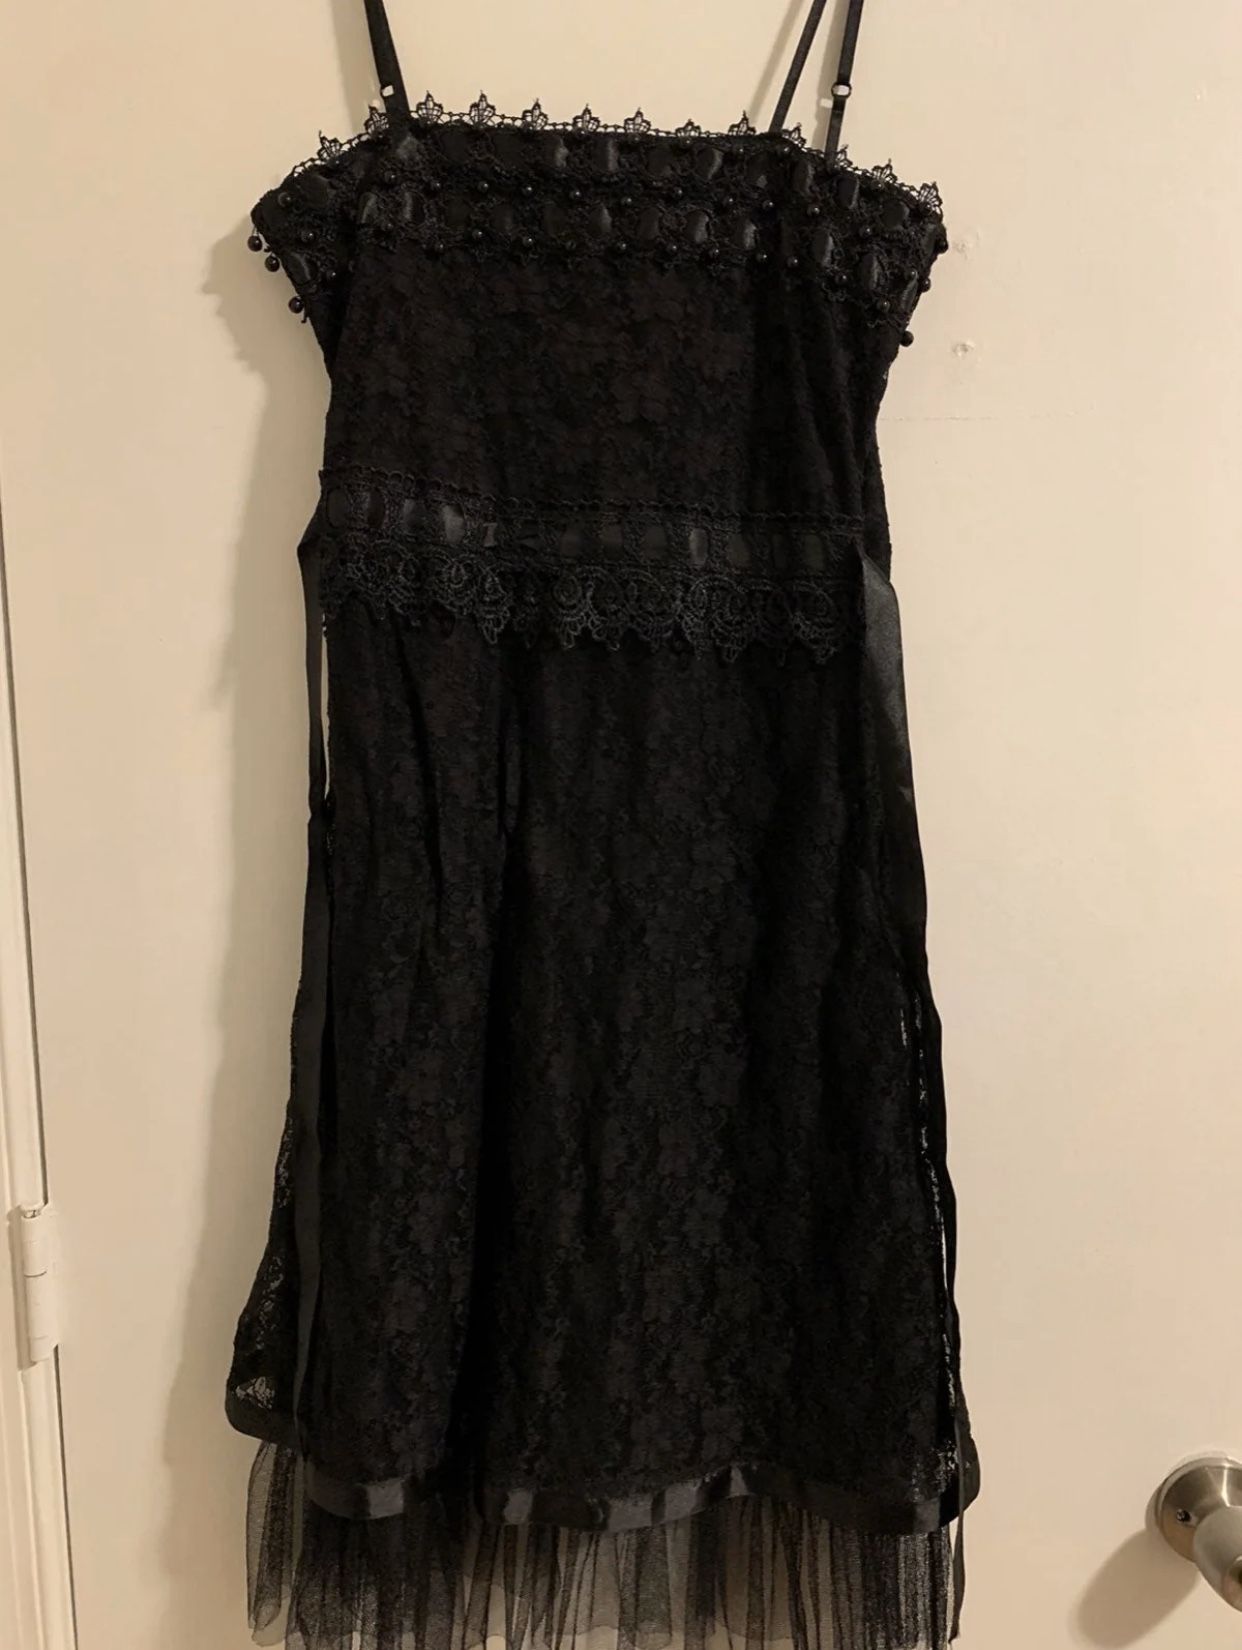 Black lace chiffon sleeveless dress